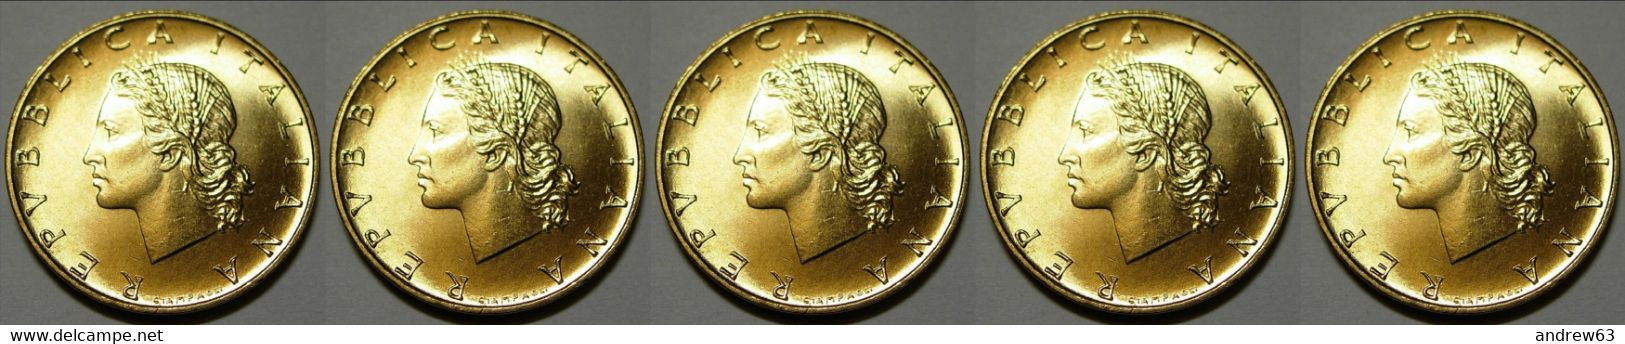 ITALIA - Lire 20 1992 - FDC/Unc Da Rotolino/from Roll 5 Monete/5 Coins - 20 Liras